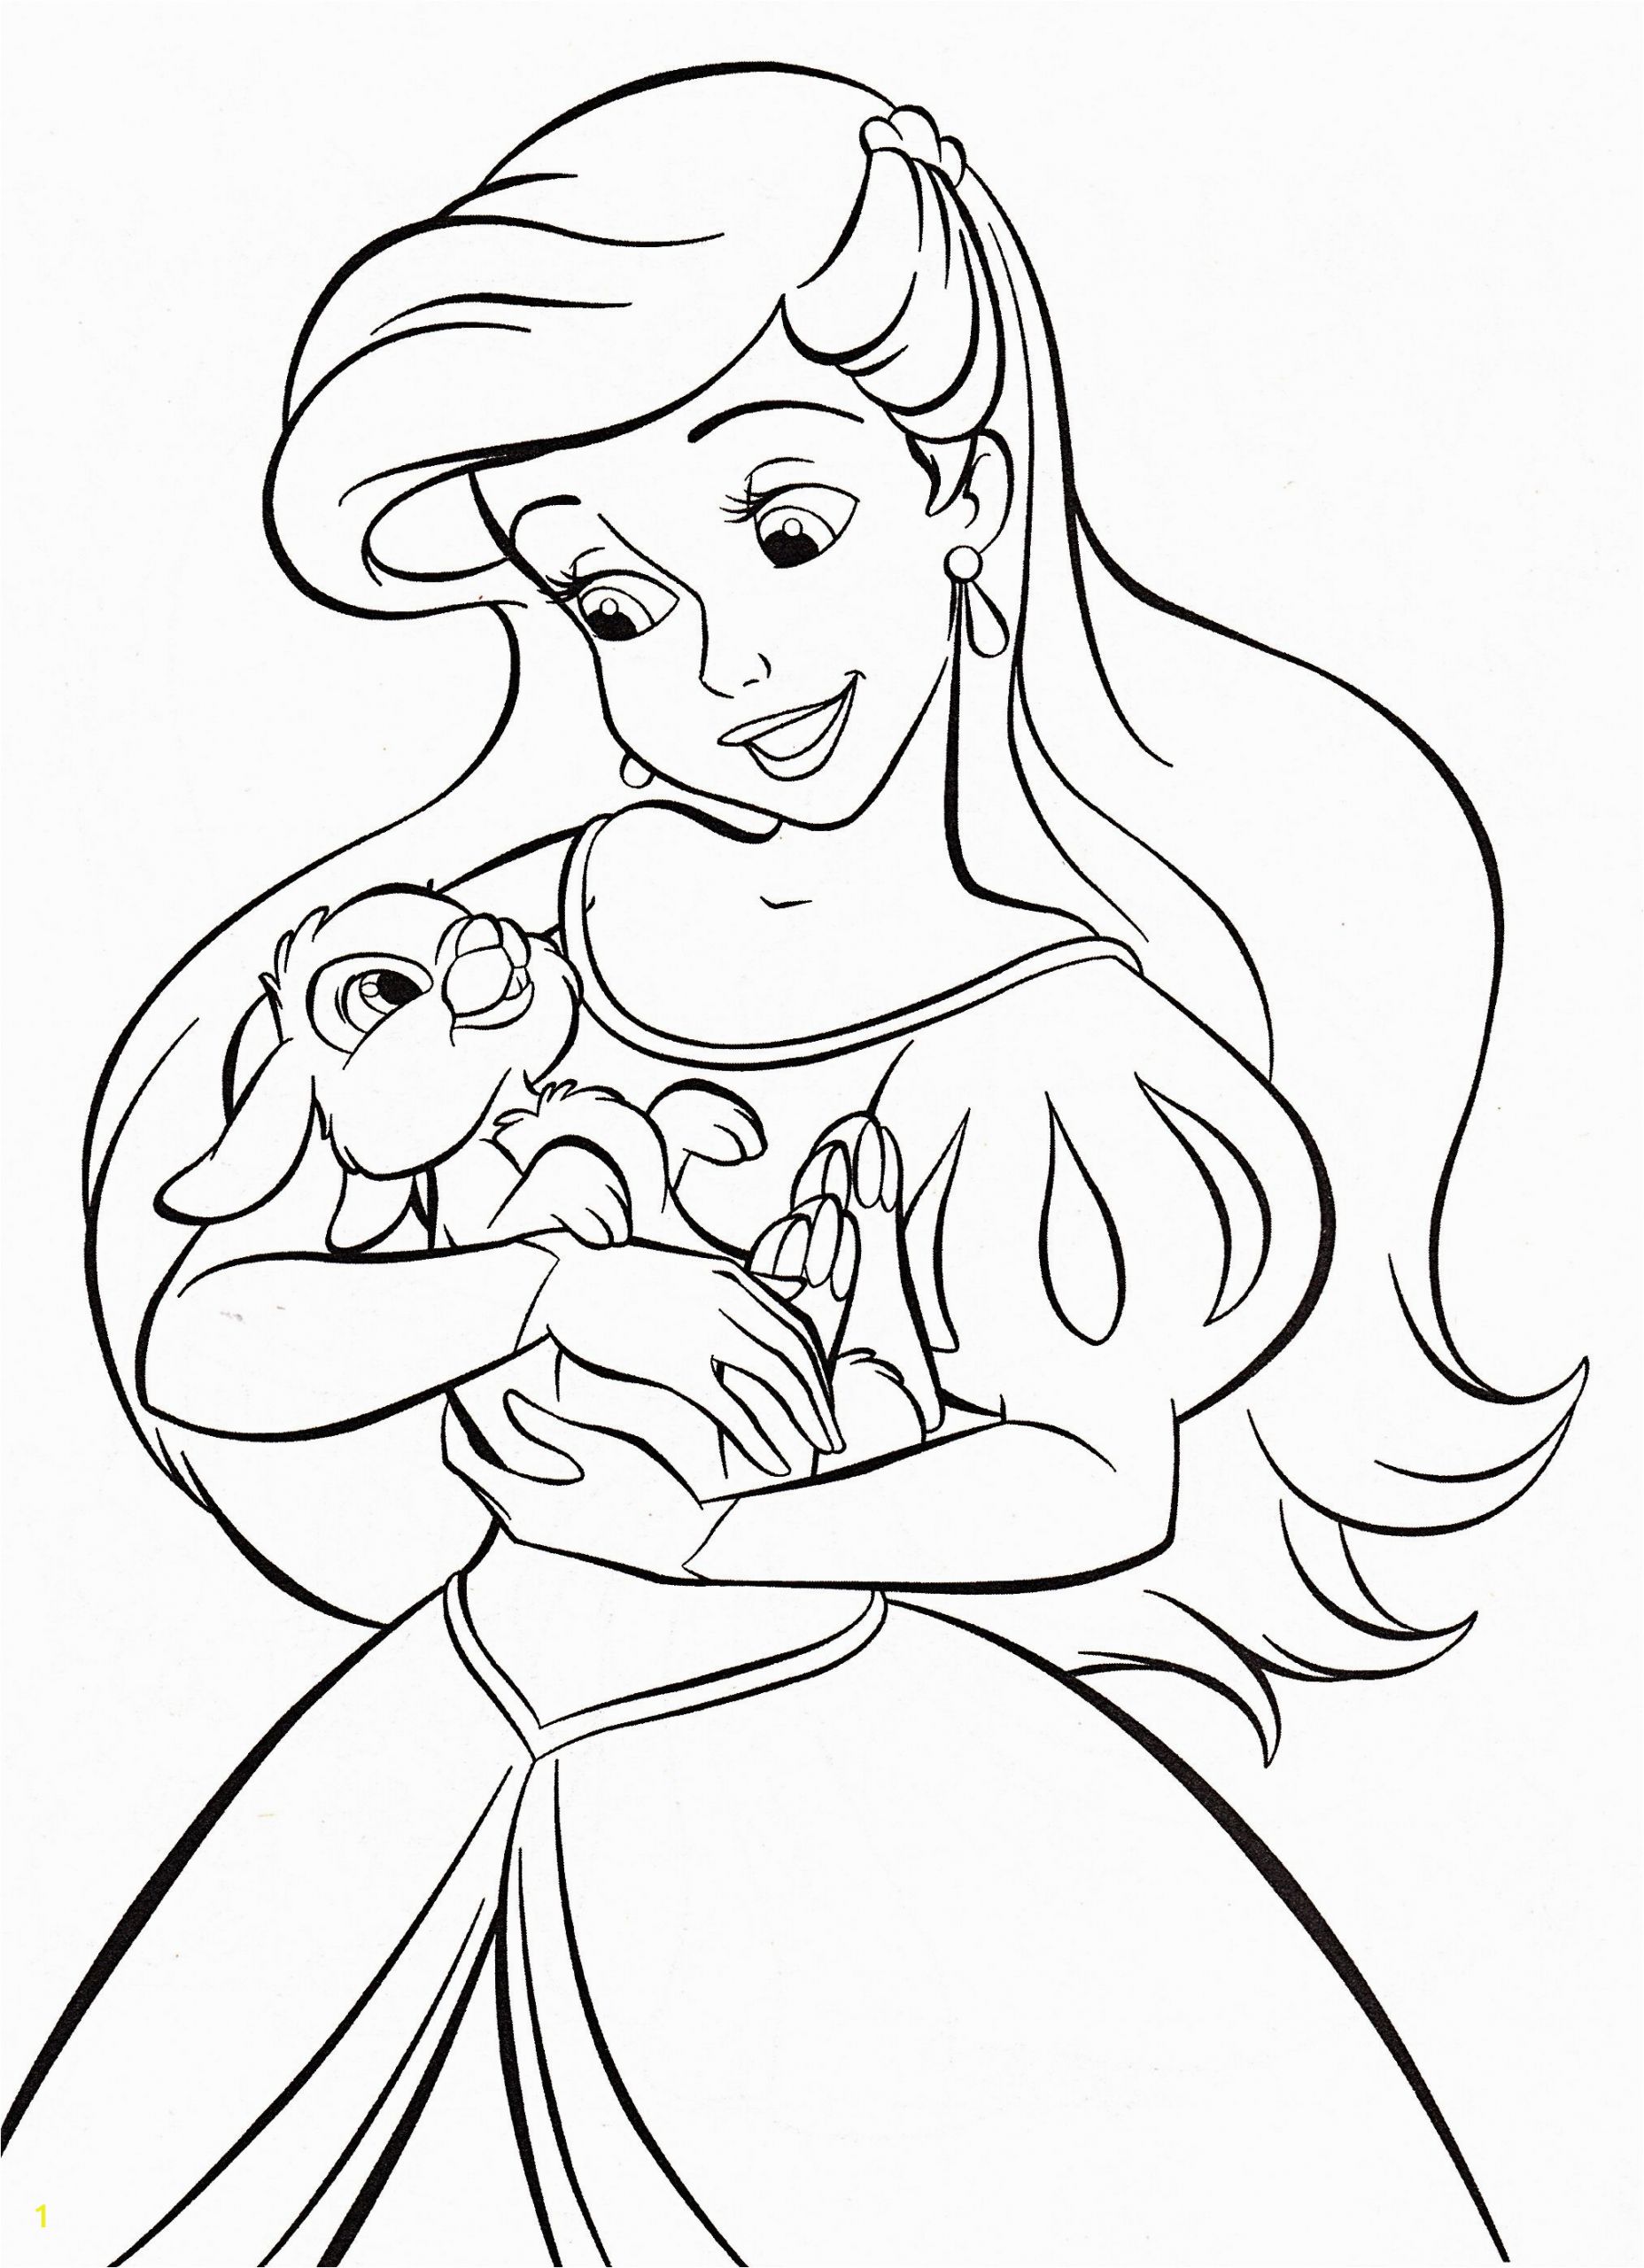 Coloring Pages Disney Princess Ariel Walt Disney Coloring Pages Princess Ariel Mit Bildern